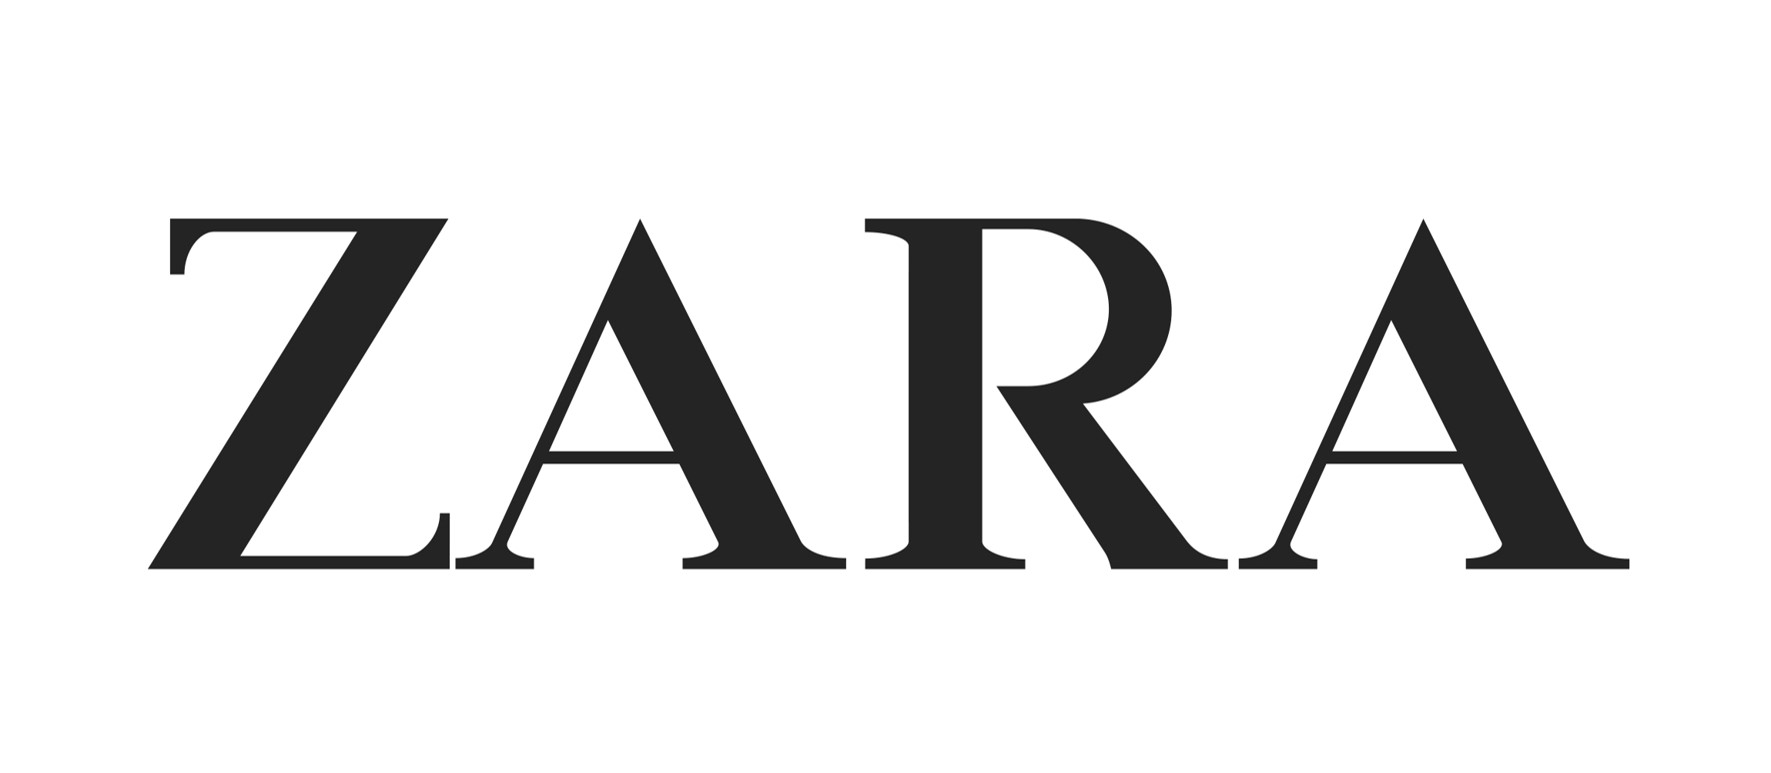 Logo de la marque Zara - C.C. ROSNY 2